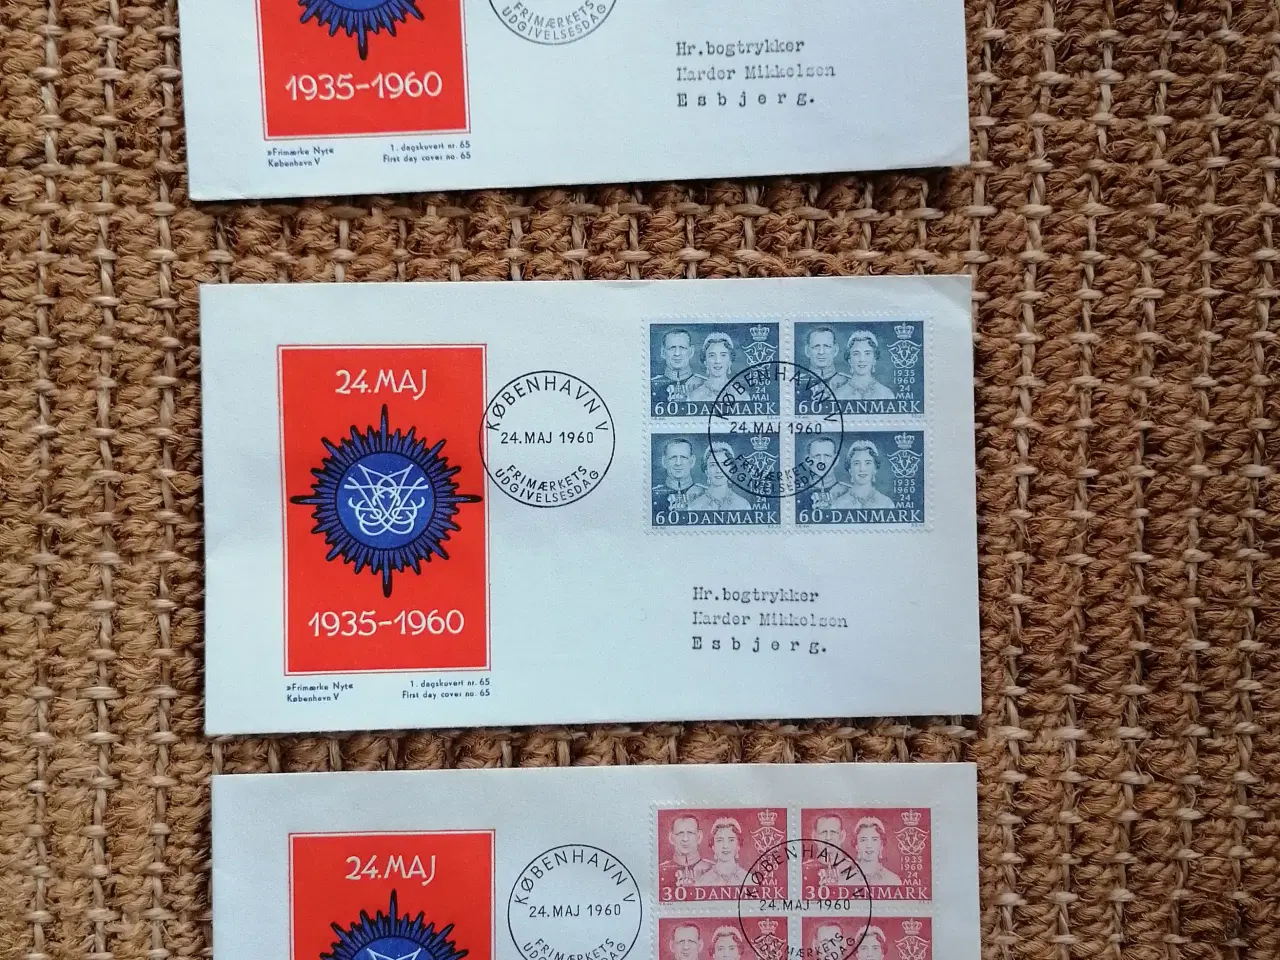 Billede 3 - Førstedagskuverter og ustemplede frimærkemapper